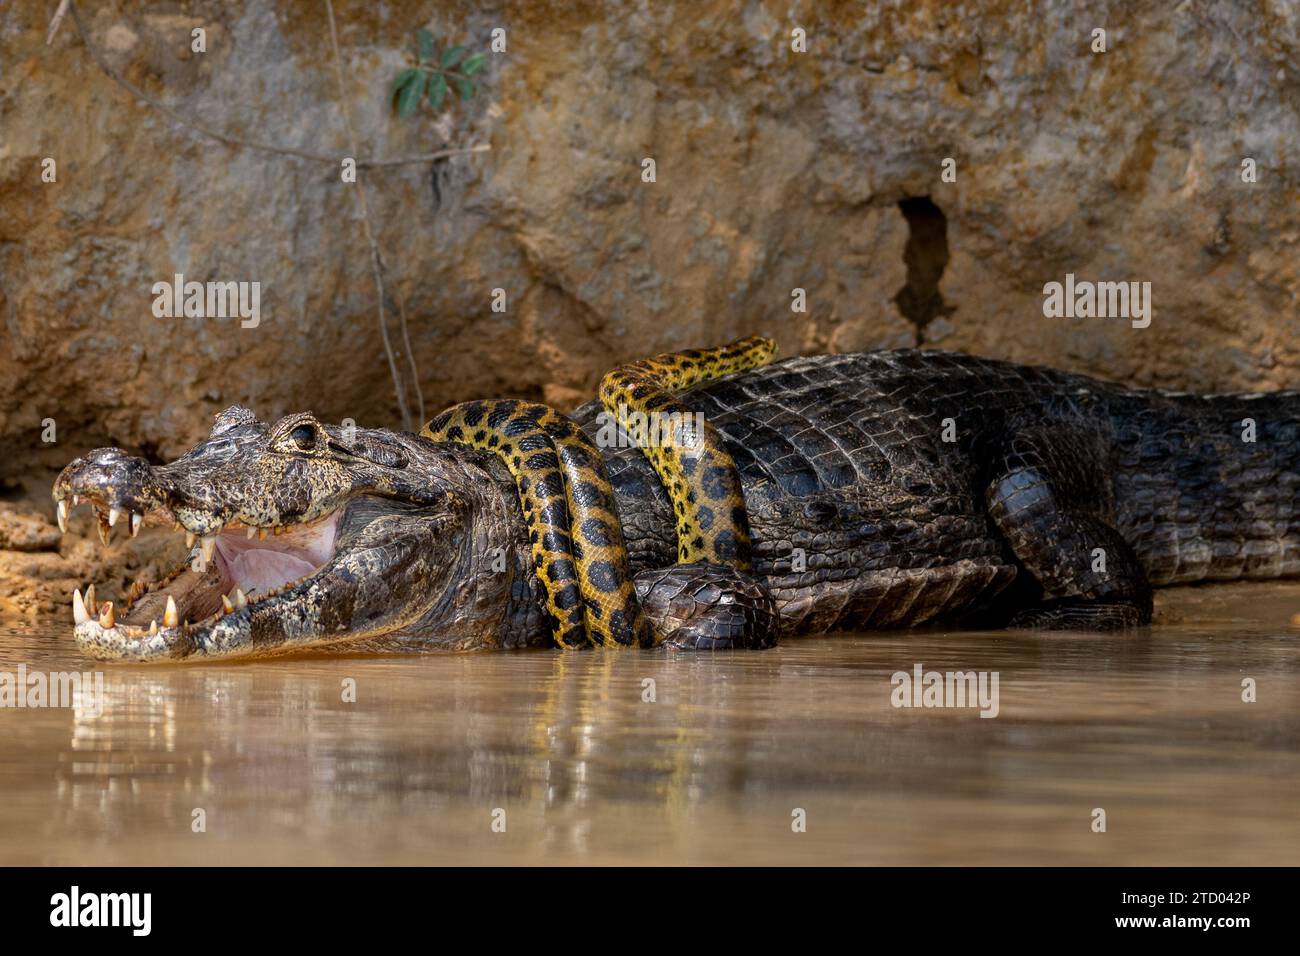 Der Alligator trägt eine Anakonda-Krawatte. BRASILIENS SPANNENDE Bilder zeigen einen Kaiman-Alligator, der eine gelbe Anakonda wie eine Krawatte trägt. Die 1,2 Meter lange Stockfoto